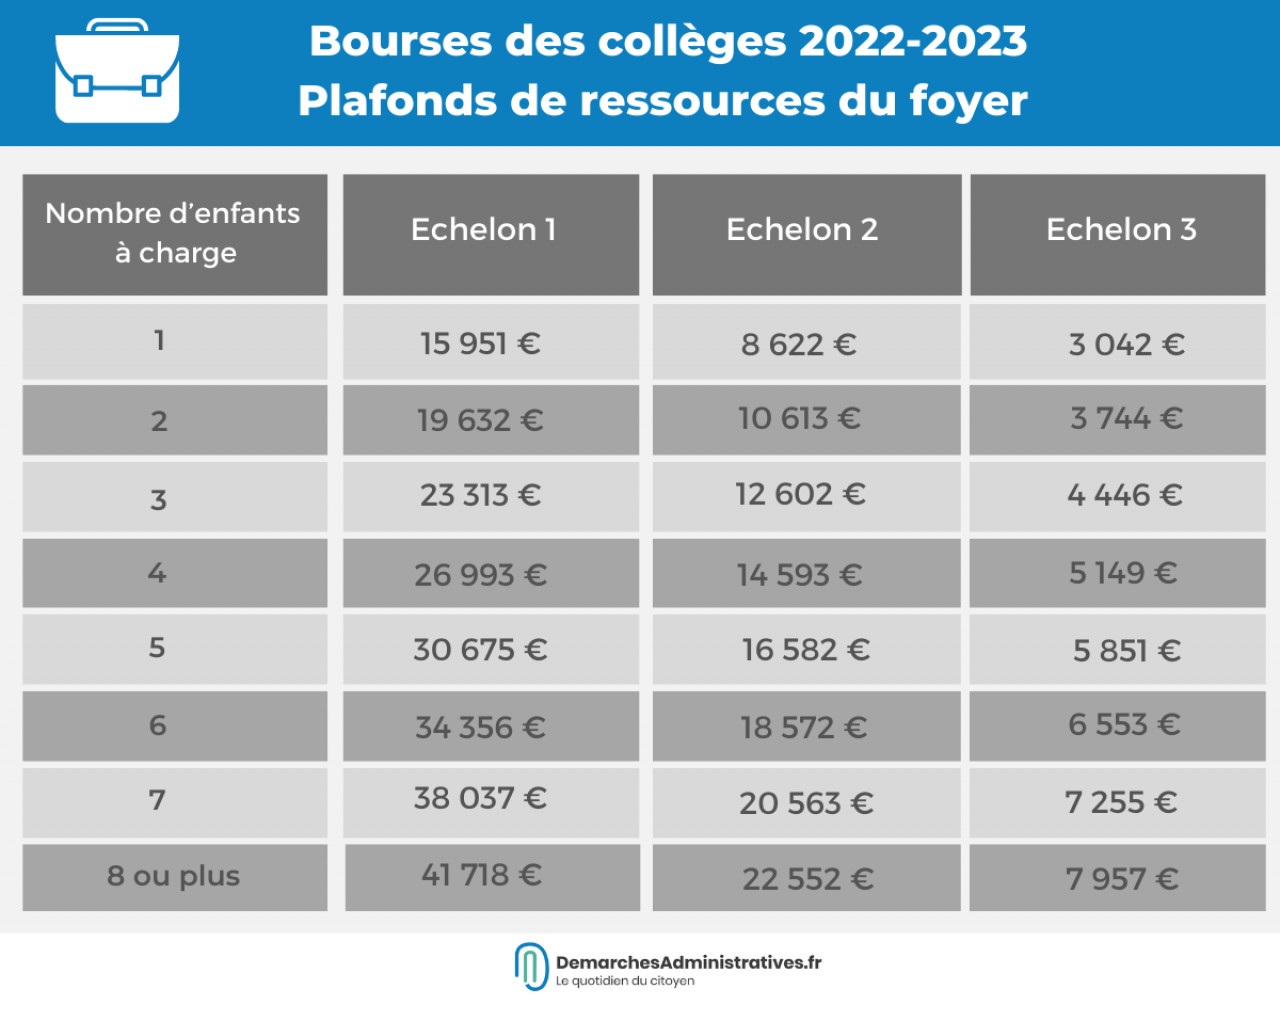 Bourse des collèges 2022-2023 : dates de versement et montant